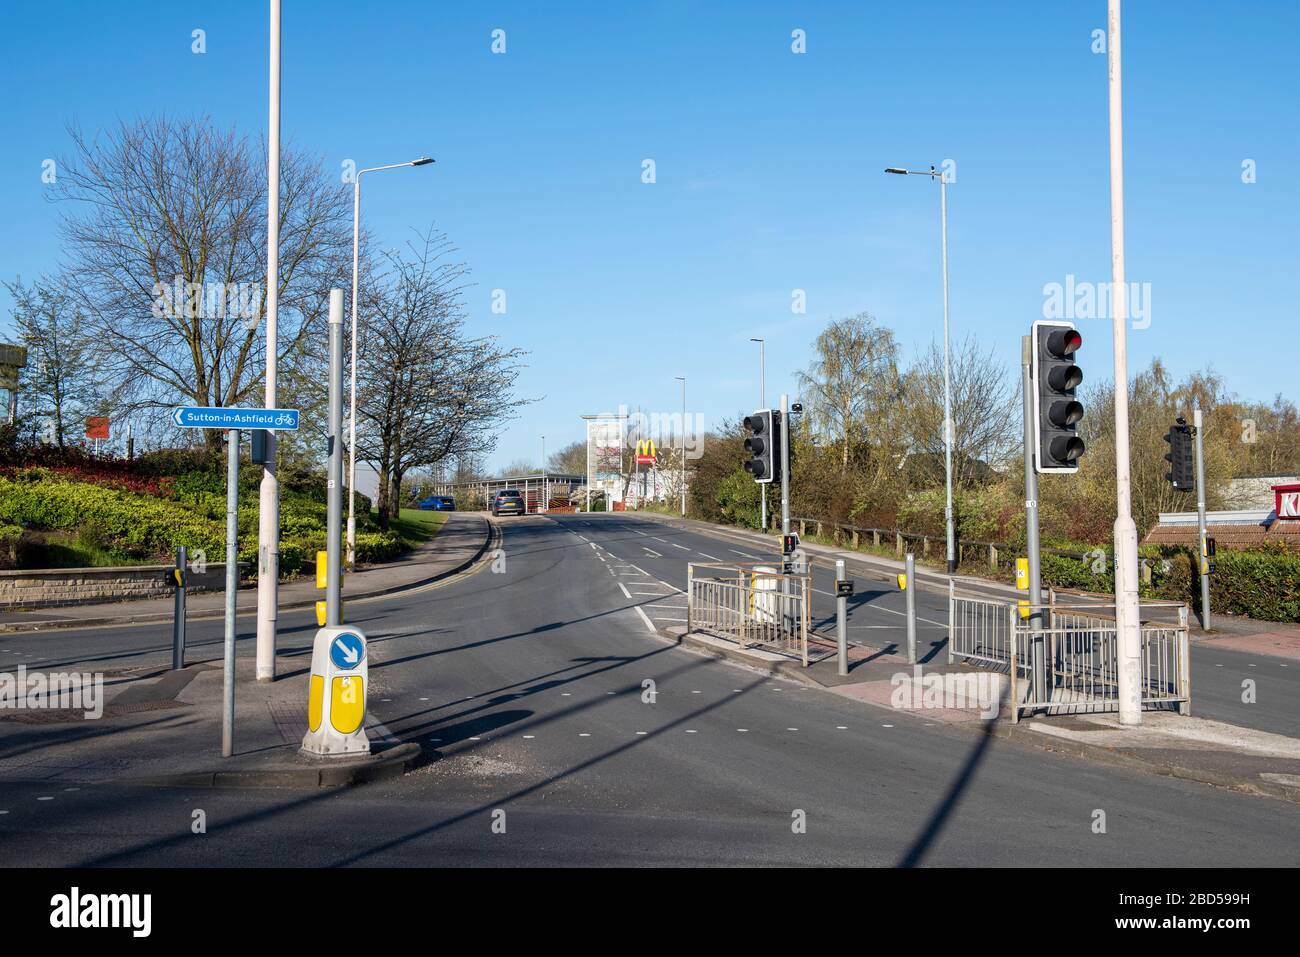 Leere Straßen in Mansfield, während der Sperrung von Covid-19, April 2020, von Mansfield Nottinghamshire England UK, erobert Stockfoto